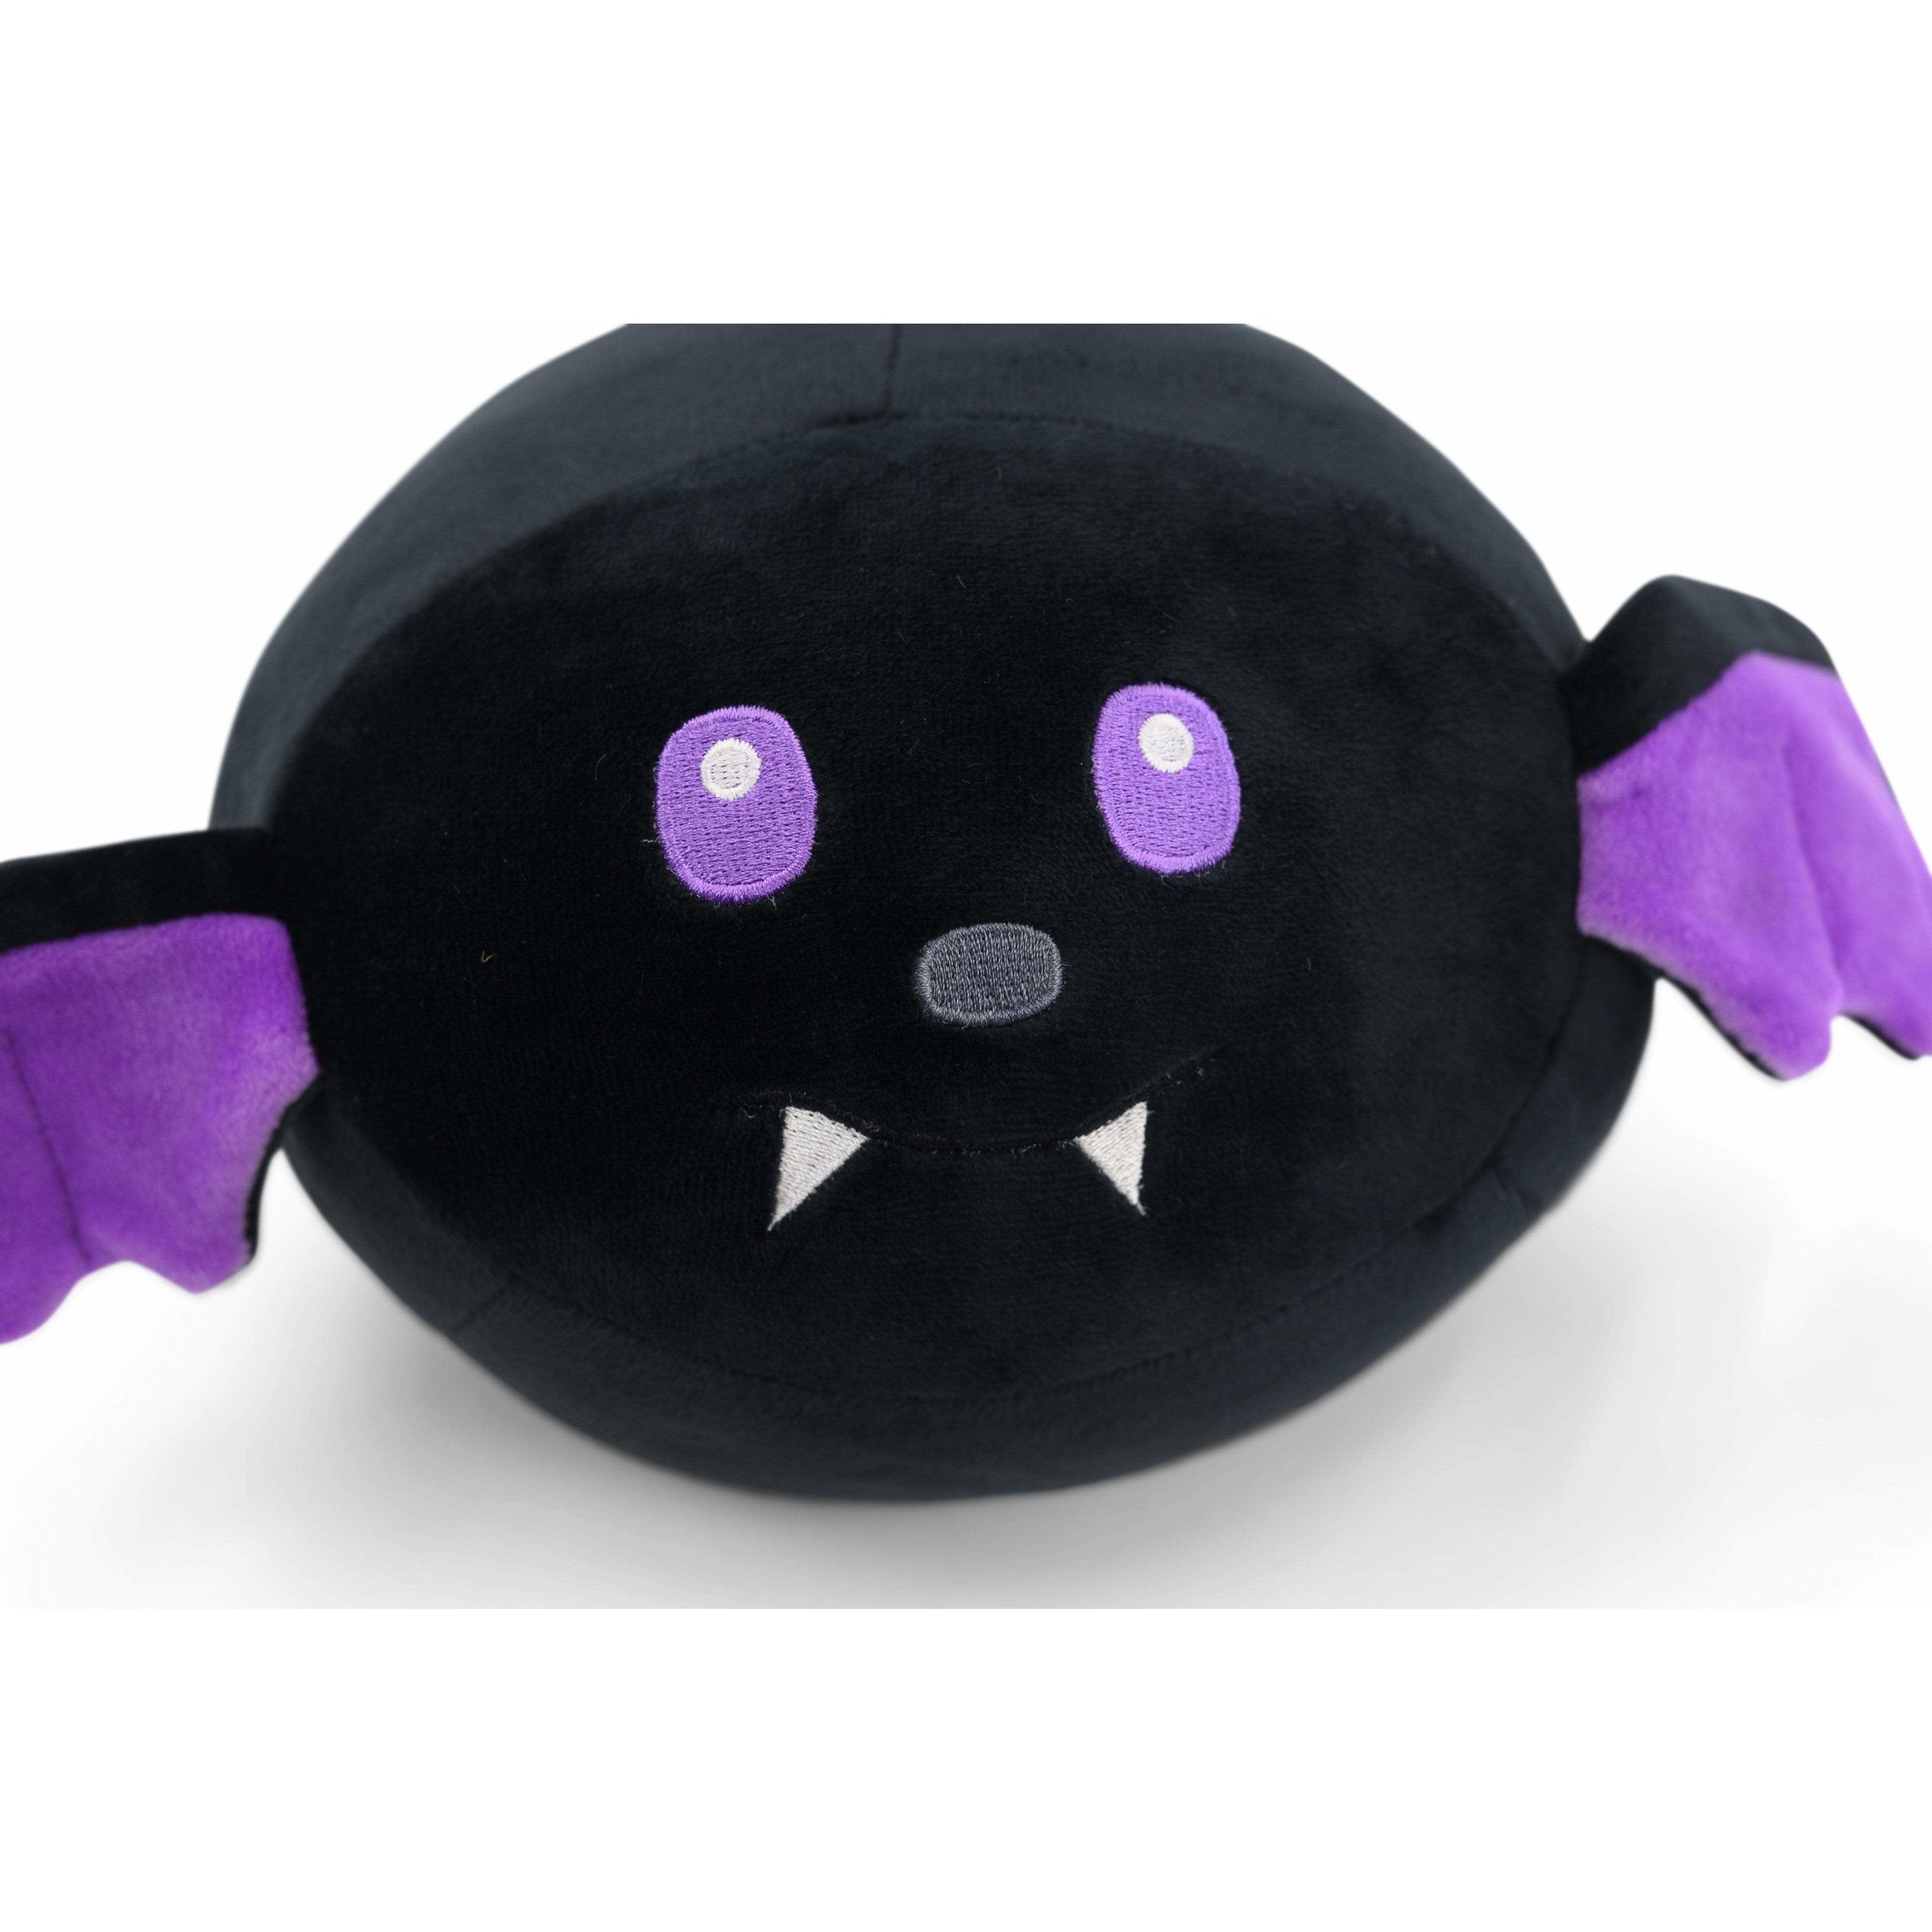 Shiny Mimikyu Plush Toy Secretly Released